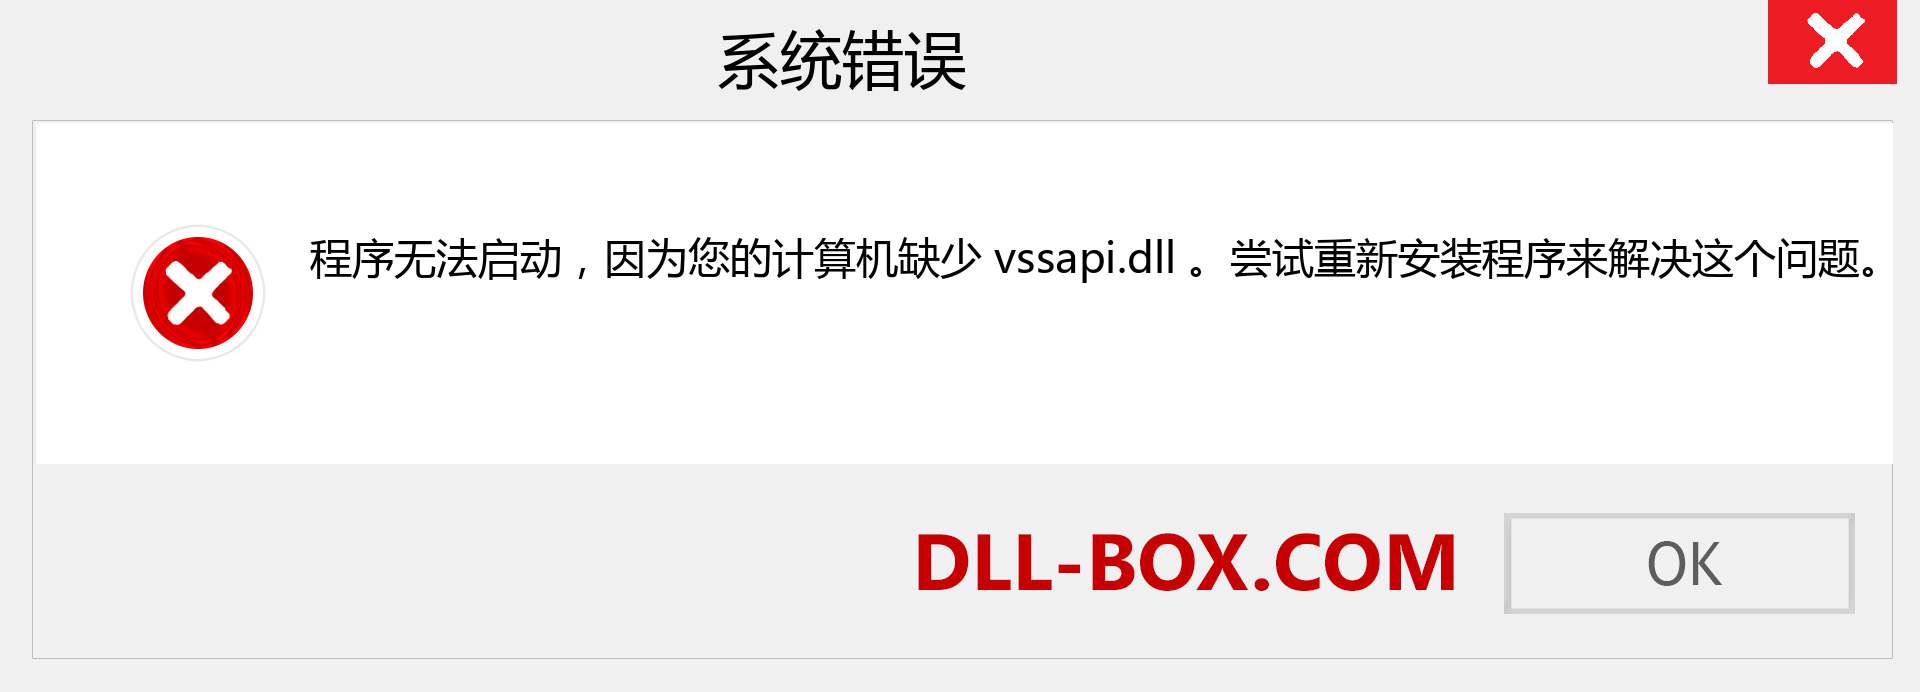 vssapi.dll 文件丢失？。 适用于 Windows 7、8、10 的下载 - 修复 Windows、照片、图像上的 vssapi dll 丢失错误